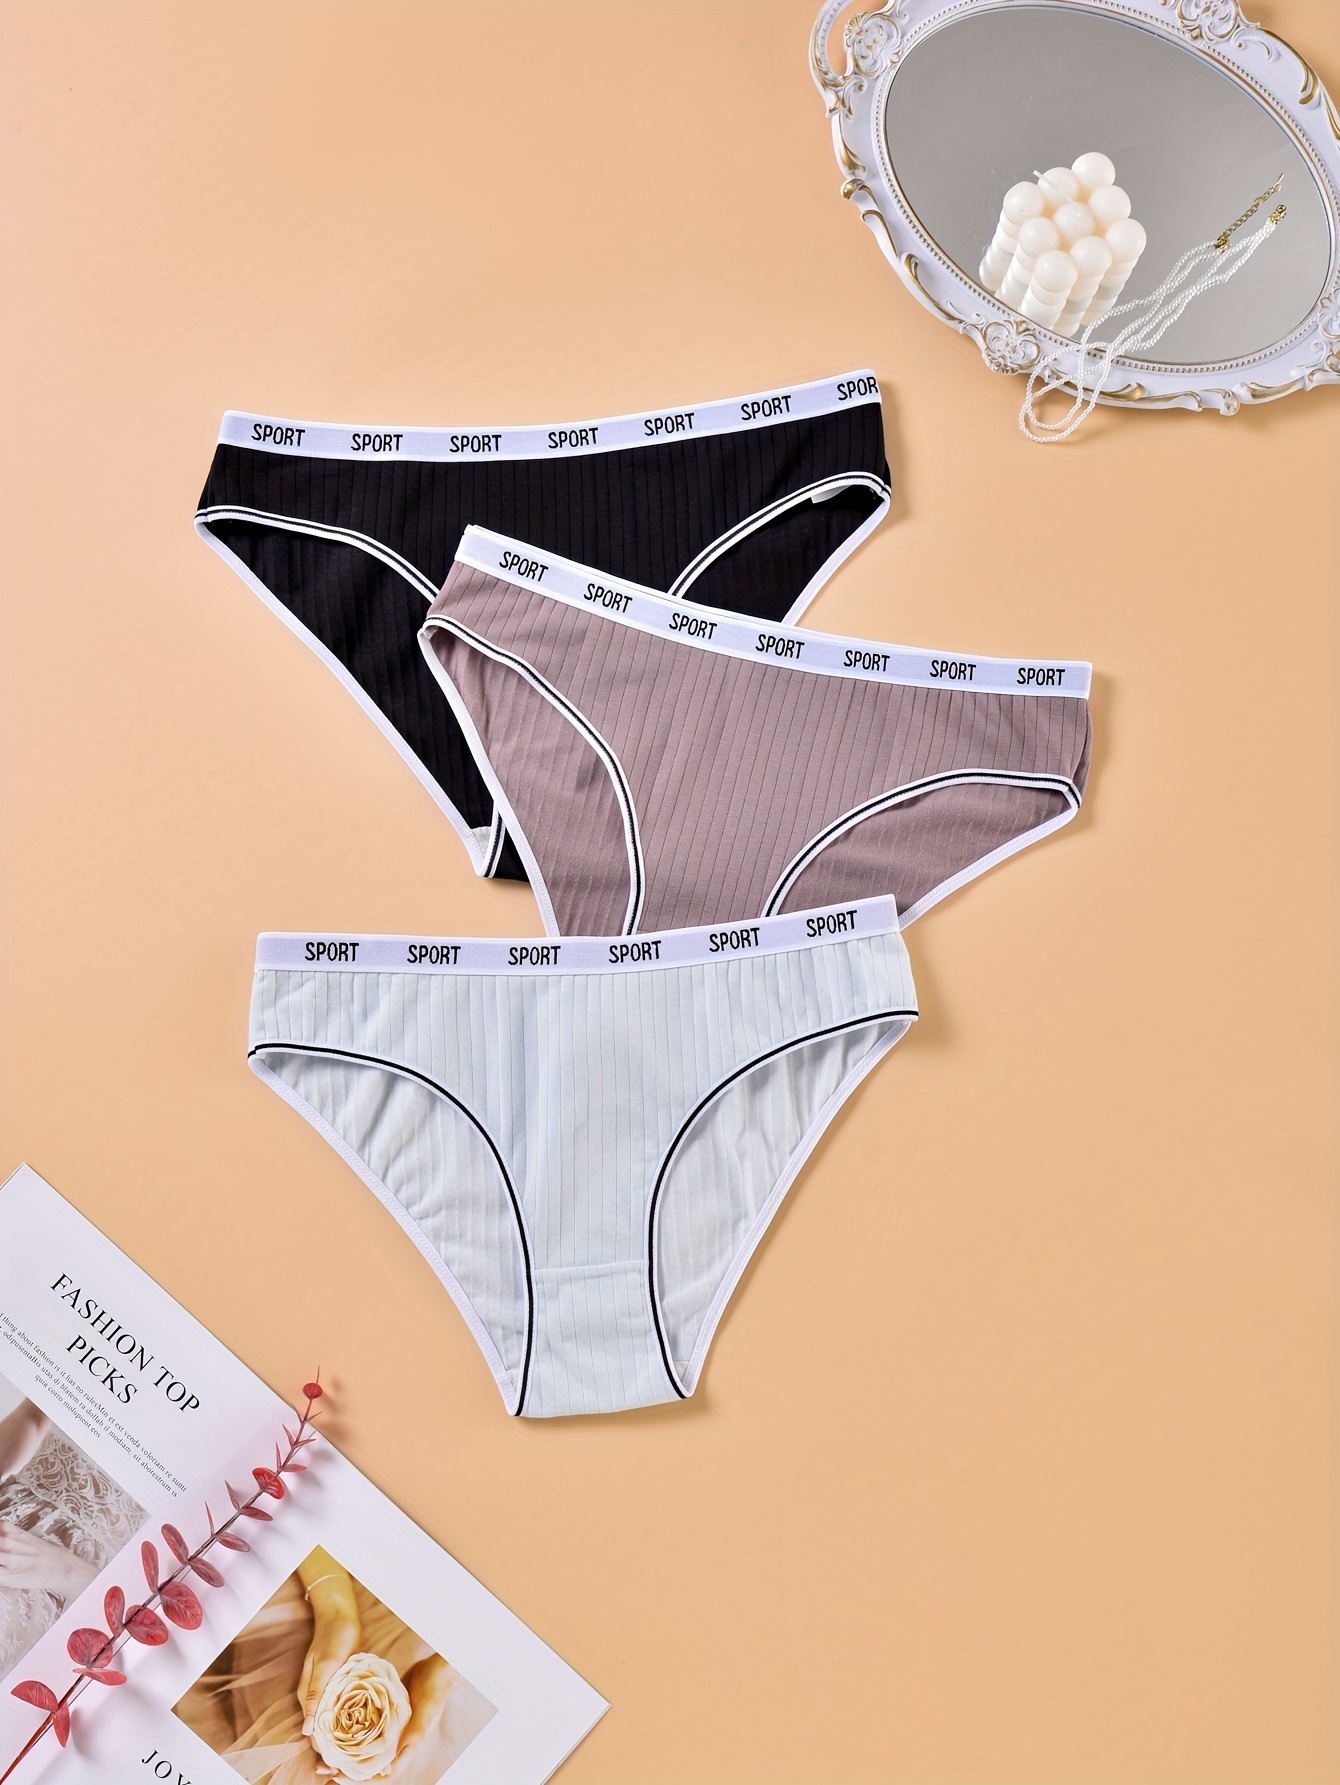 Finetoo Sexy Lace Panties Women Underpants M-2xl Plus Size Lingerie Floral  Low Waist Briefs Girls Underwear 3pcs/Set